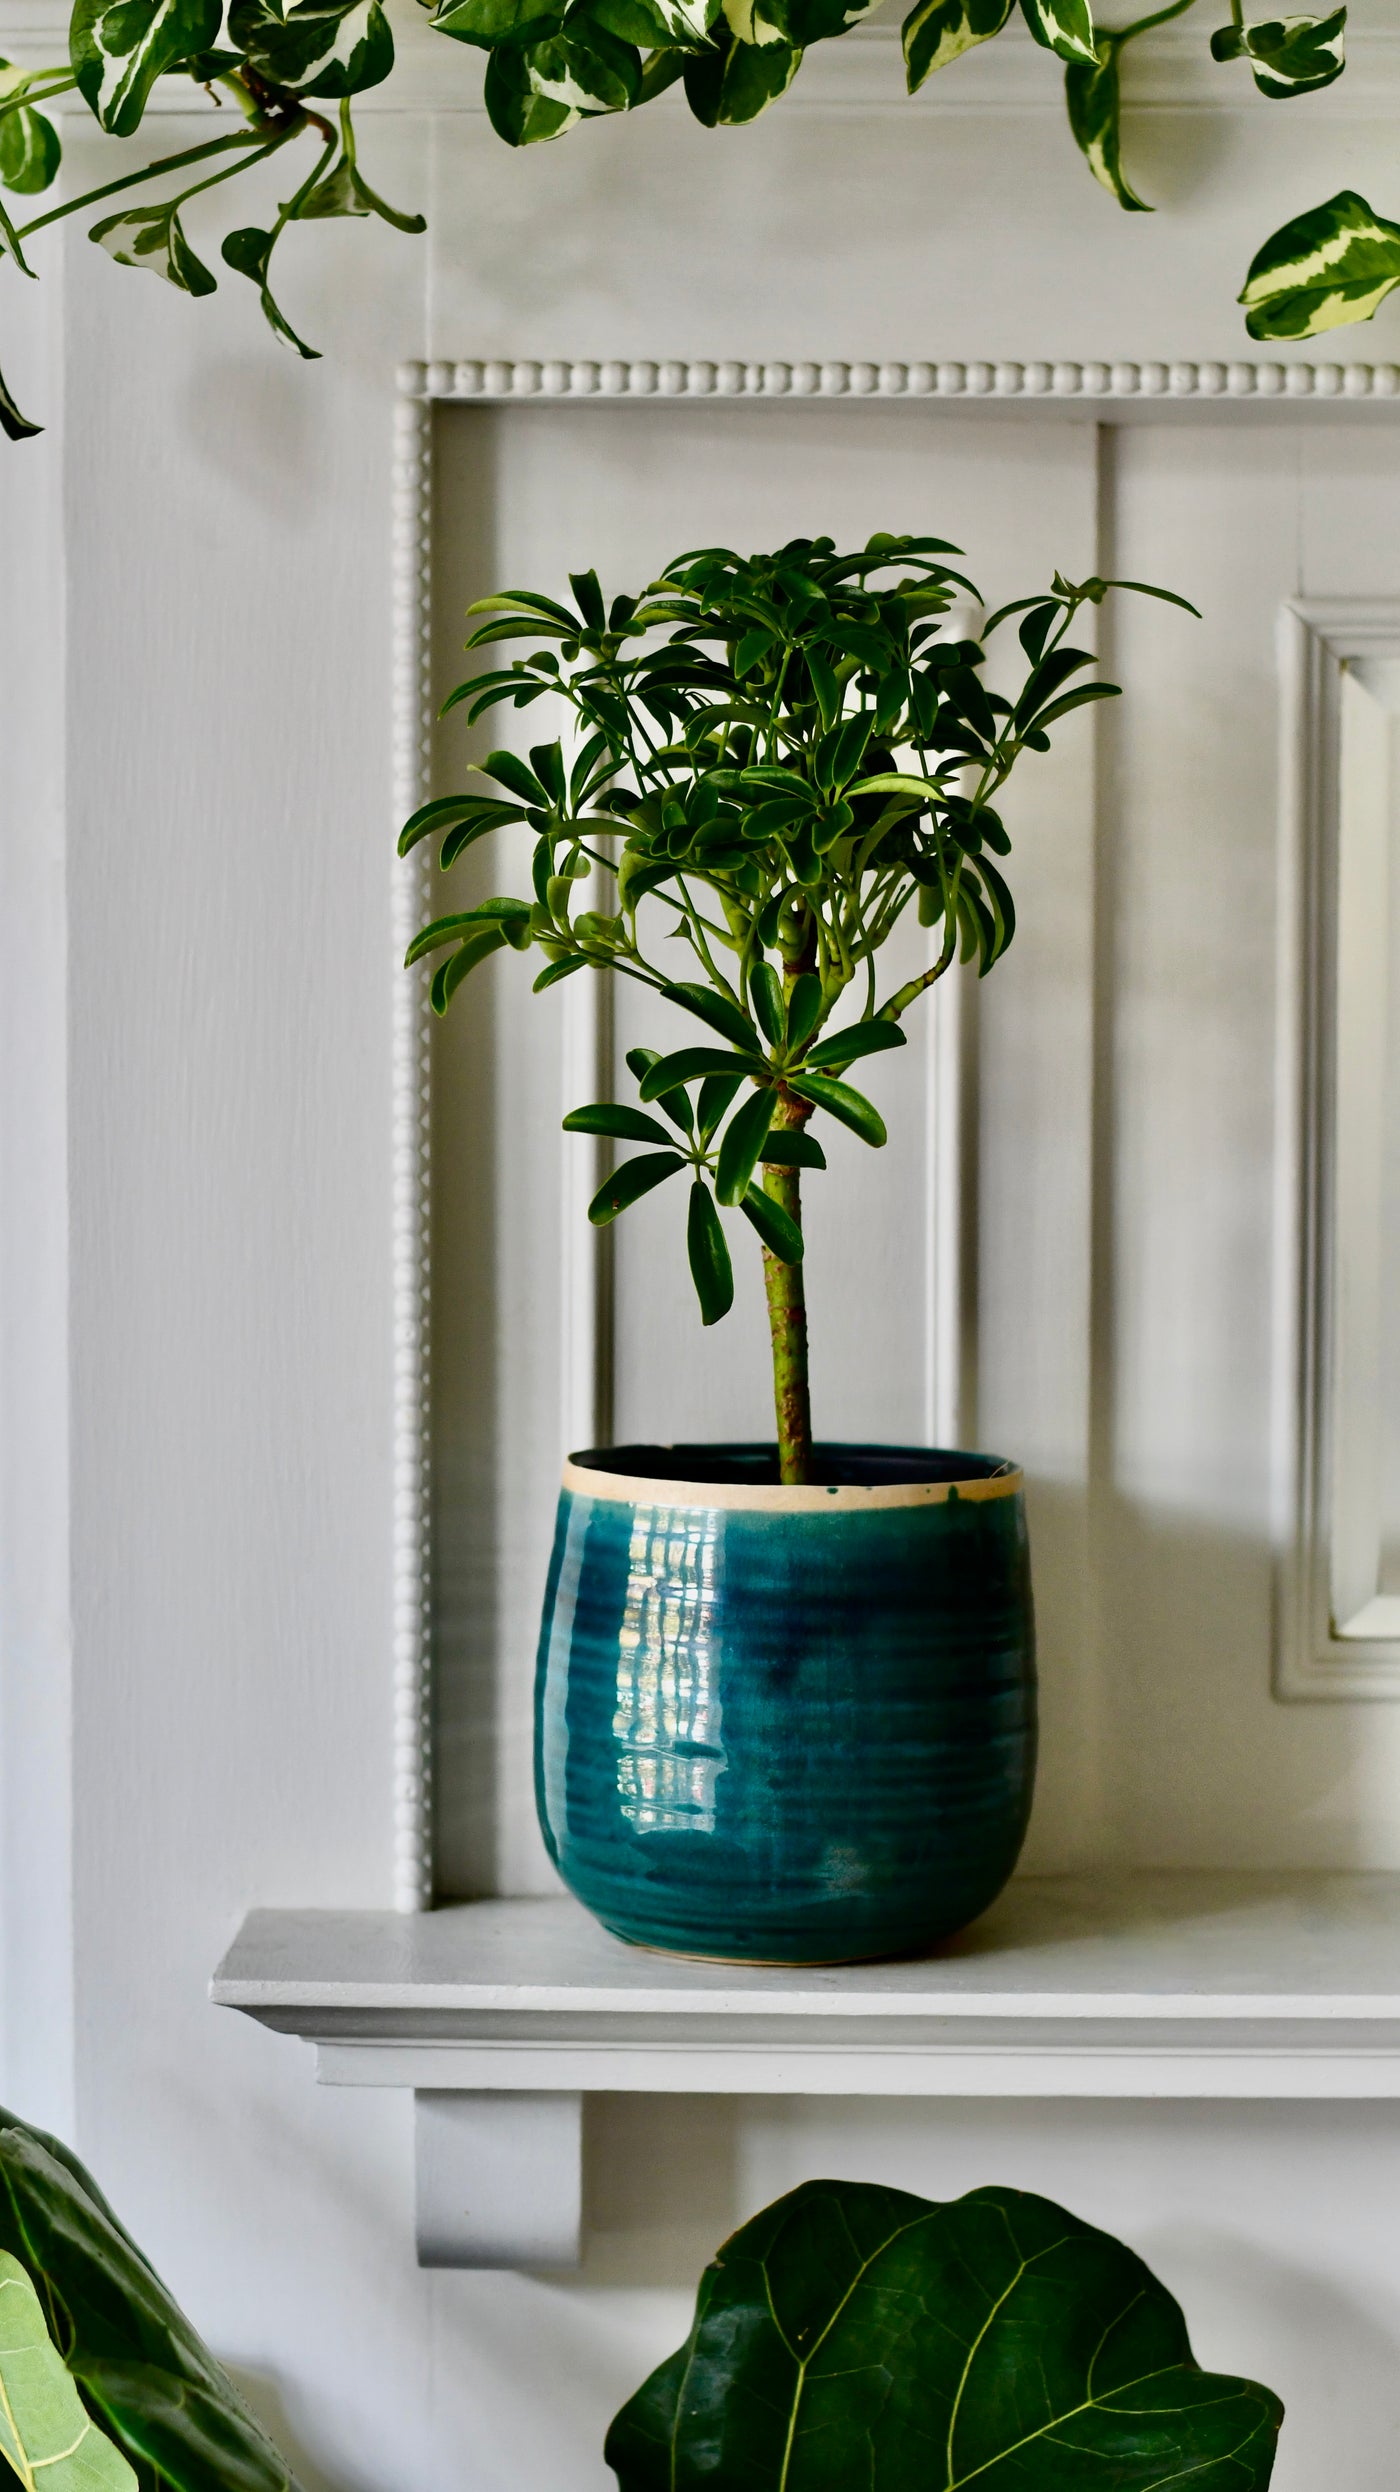 Schefflera Indoor Bonsai Tree